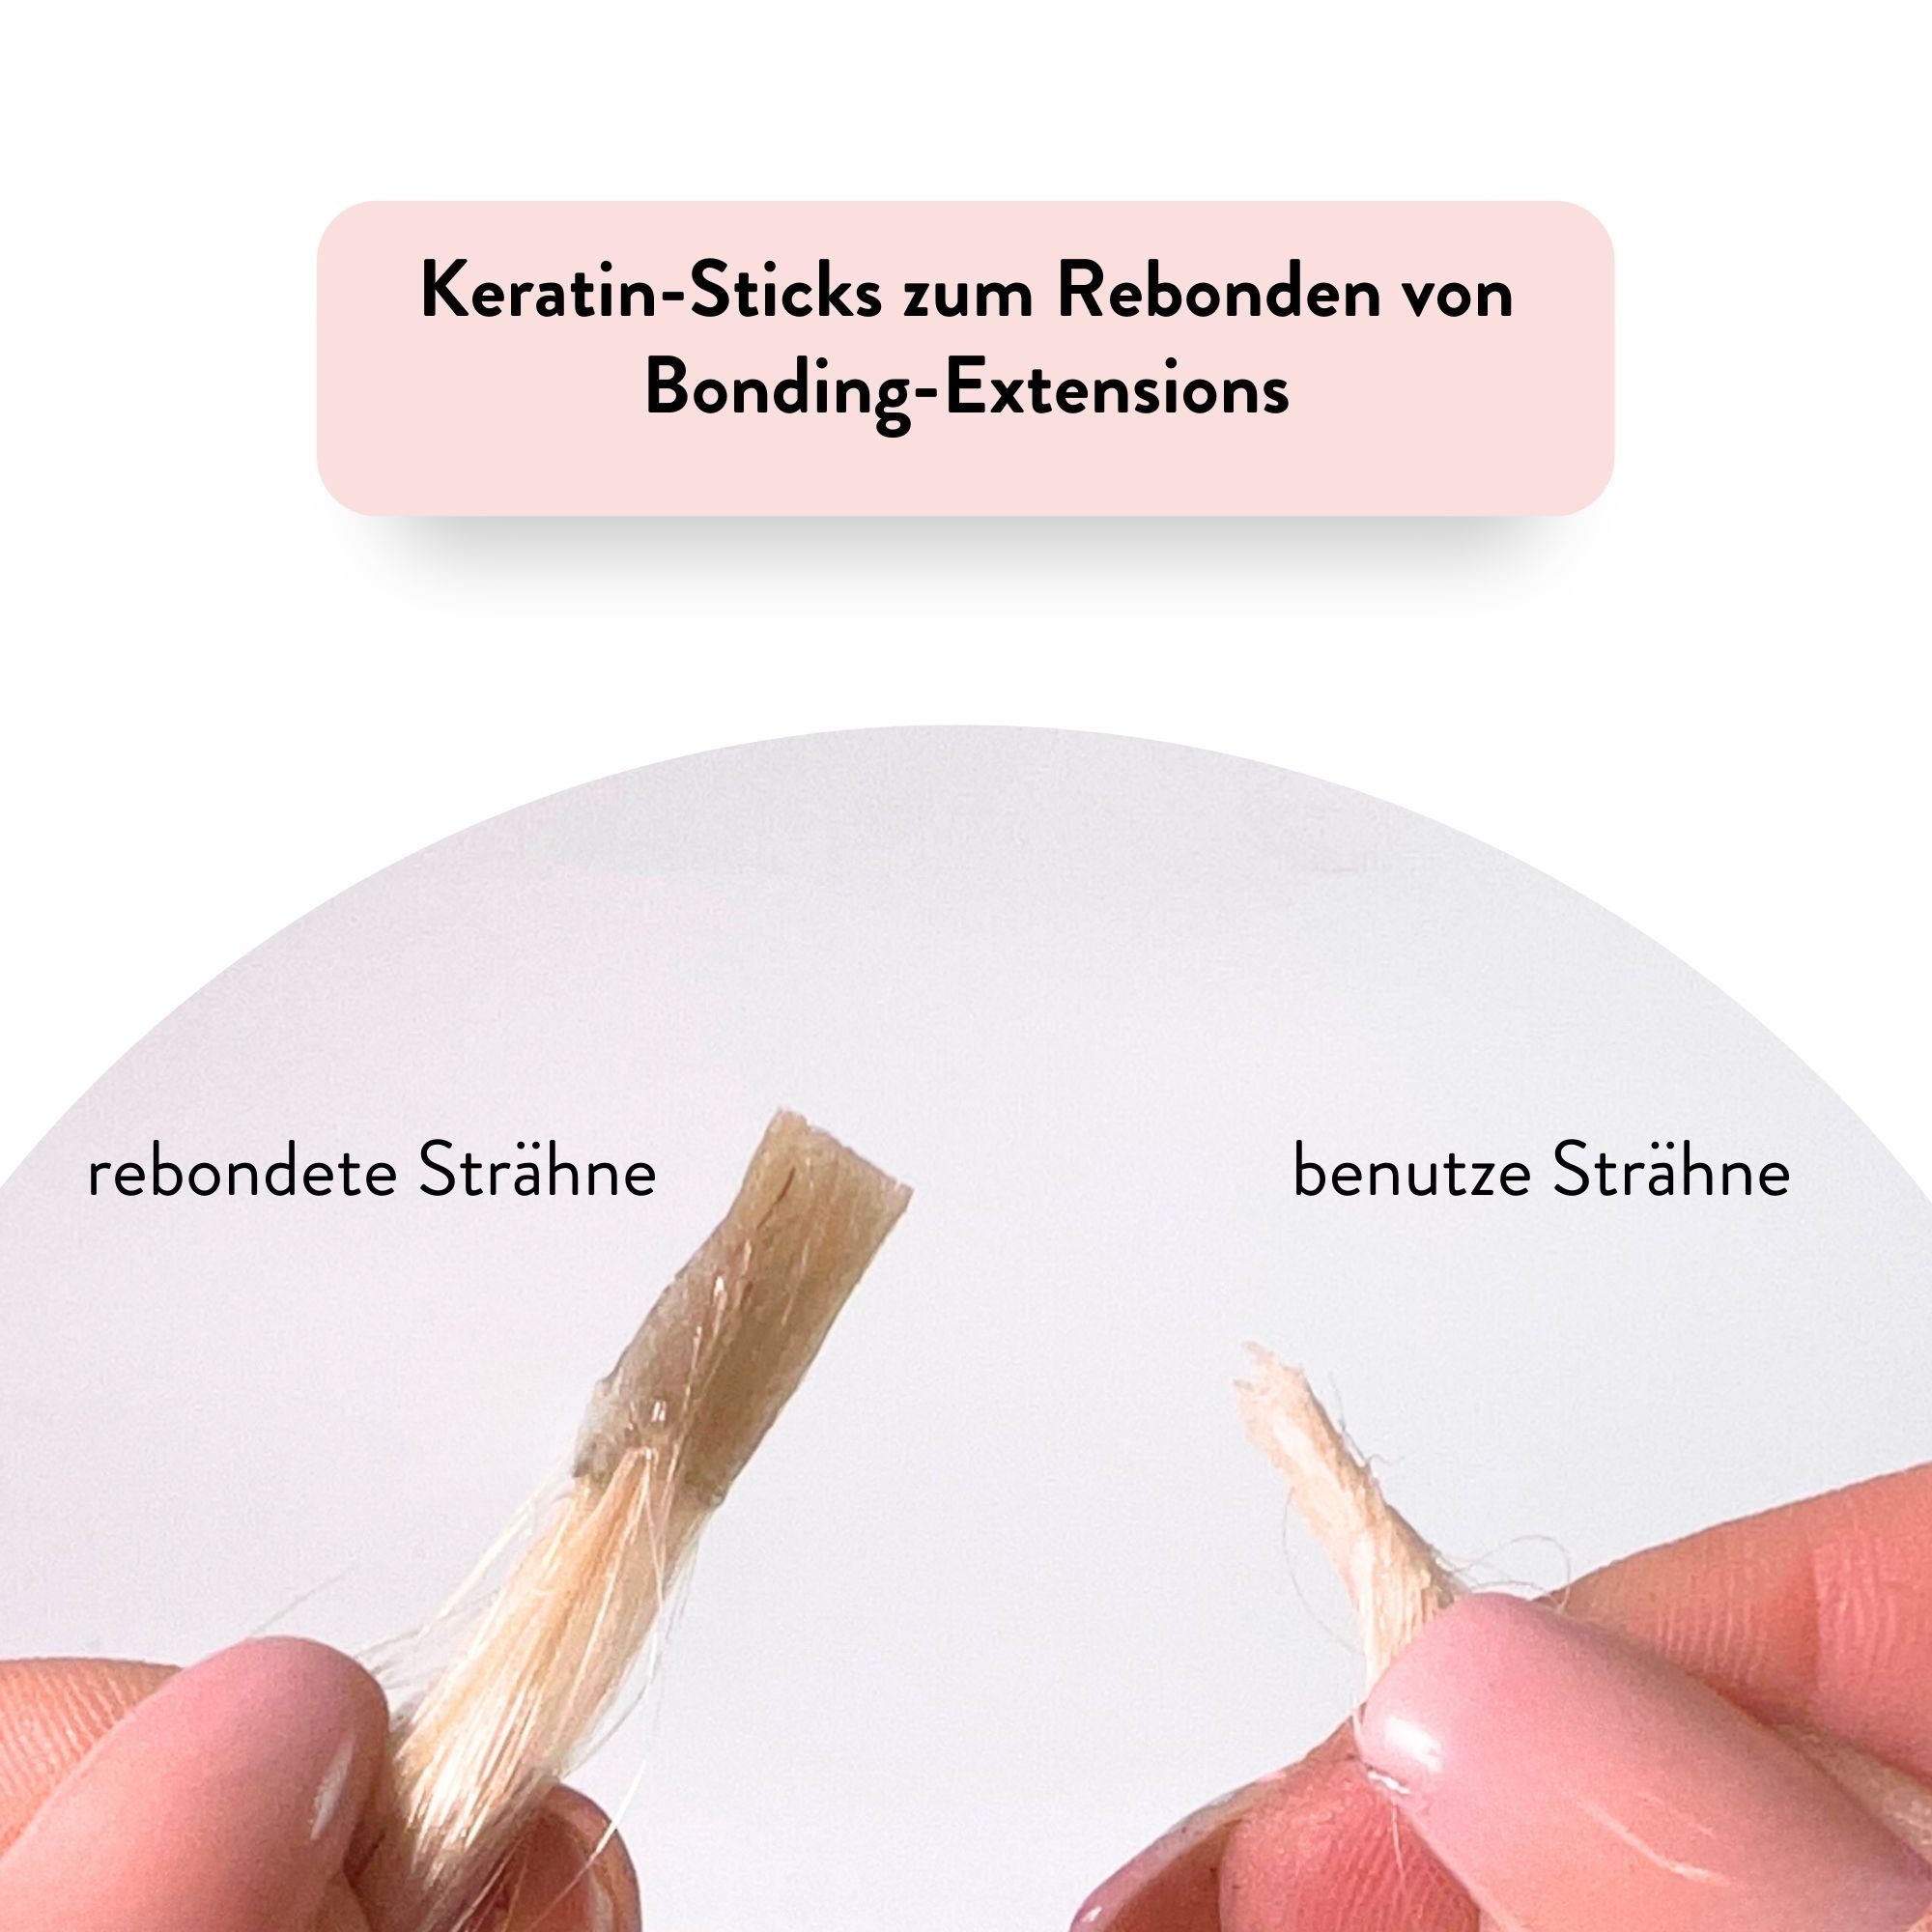 Keratin blond hair2heart Echthaar-Extension Sticks